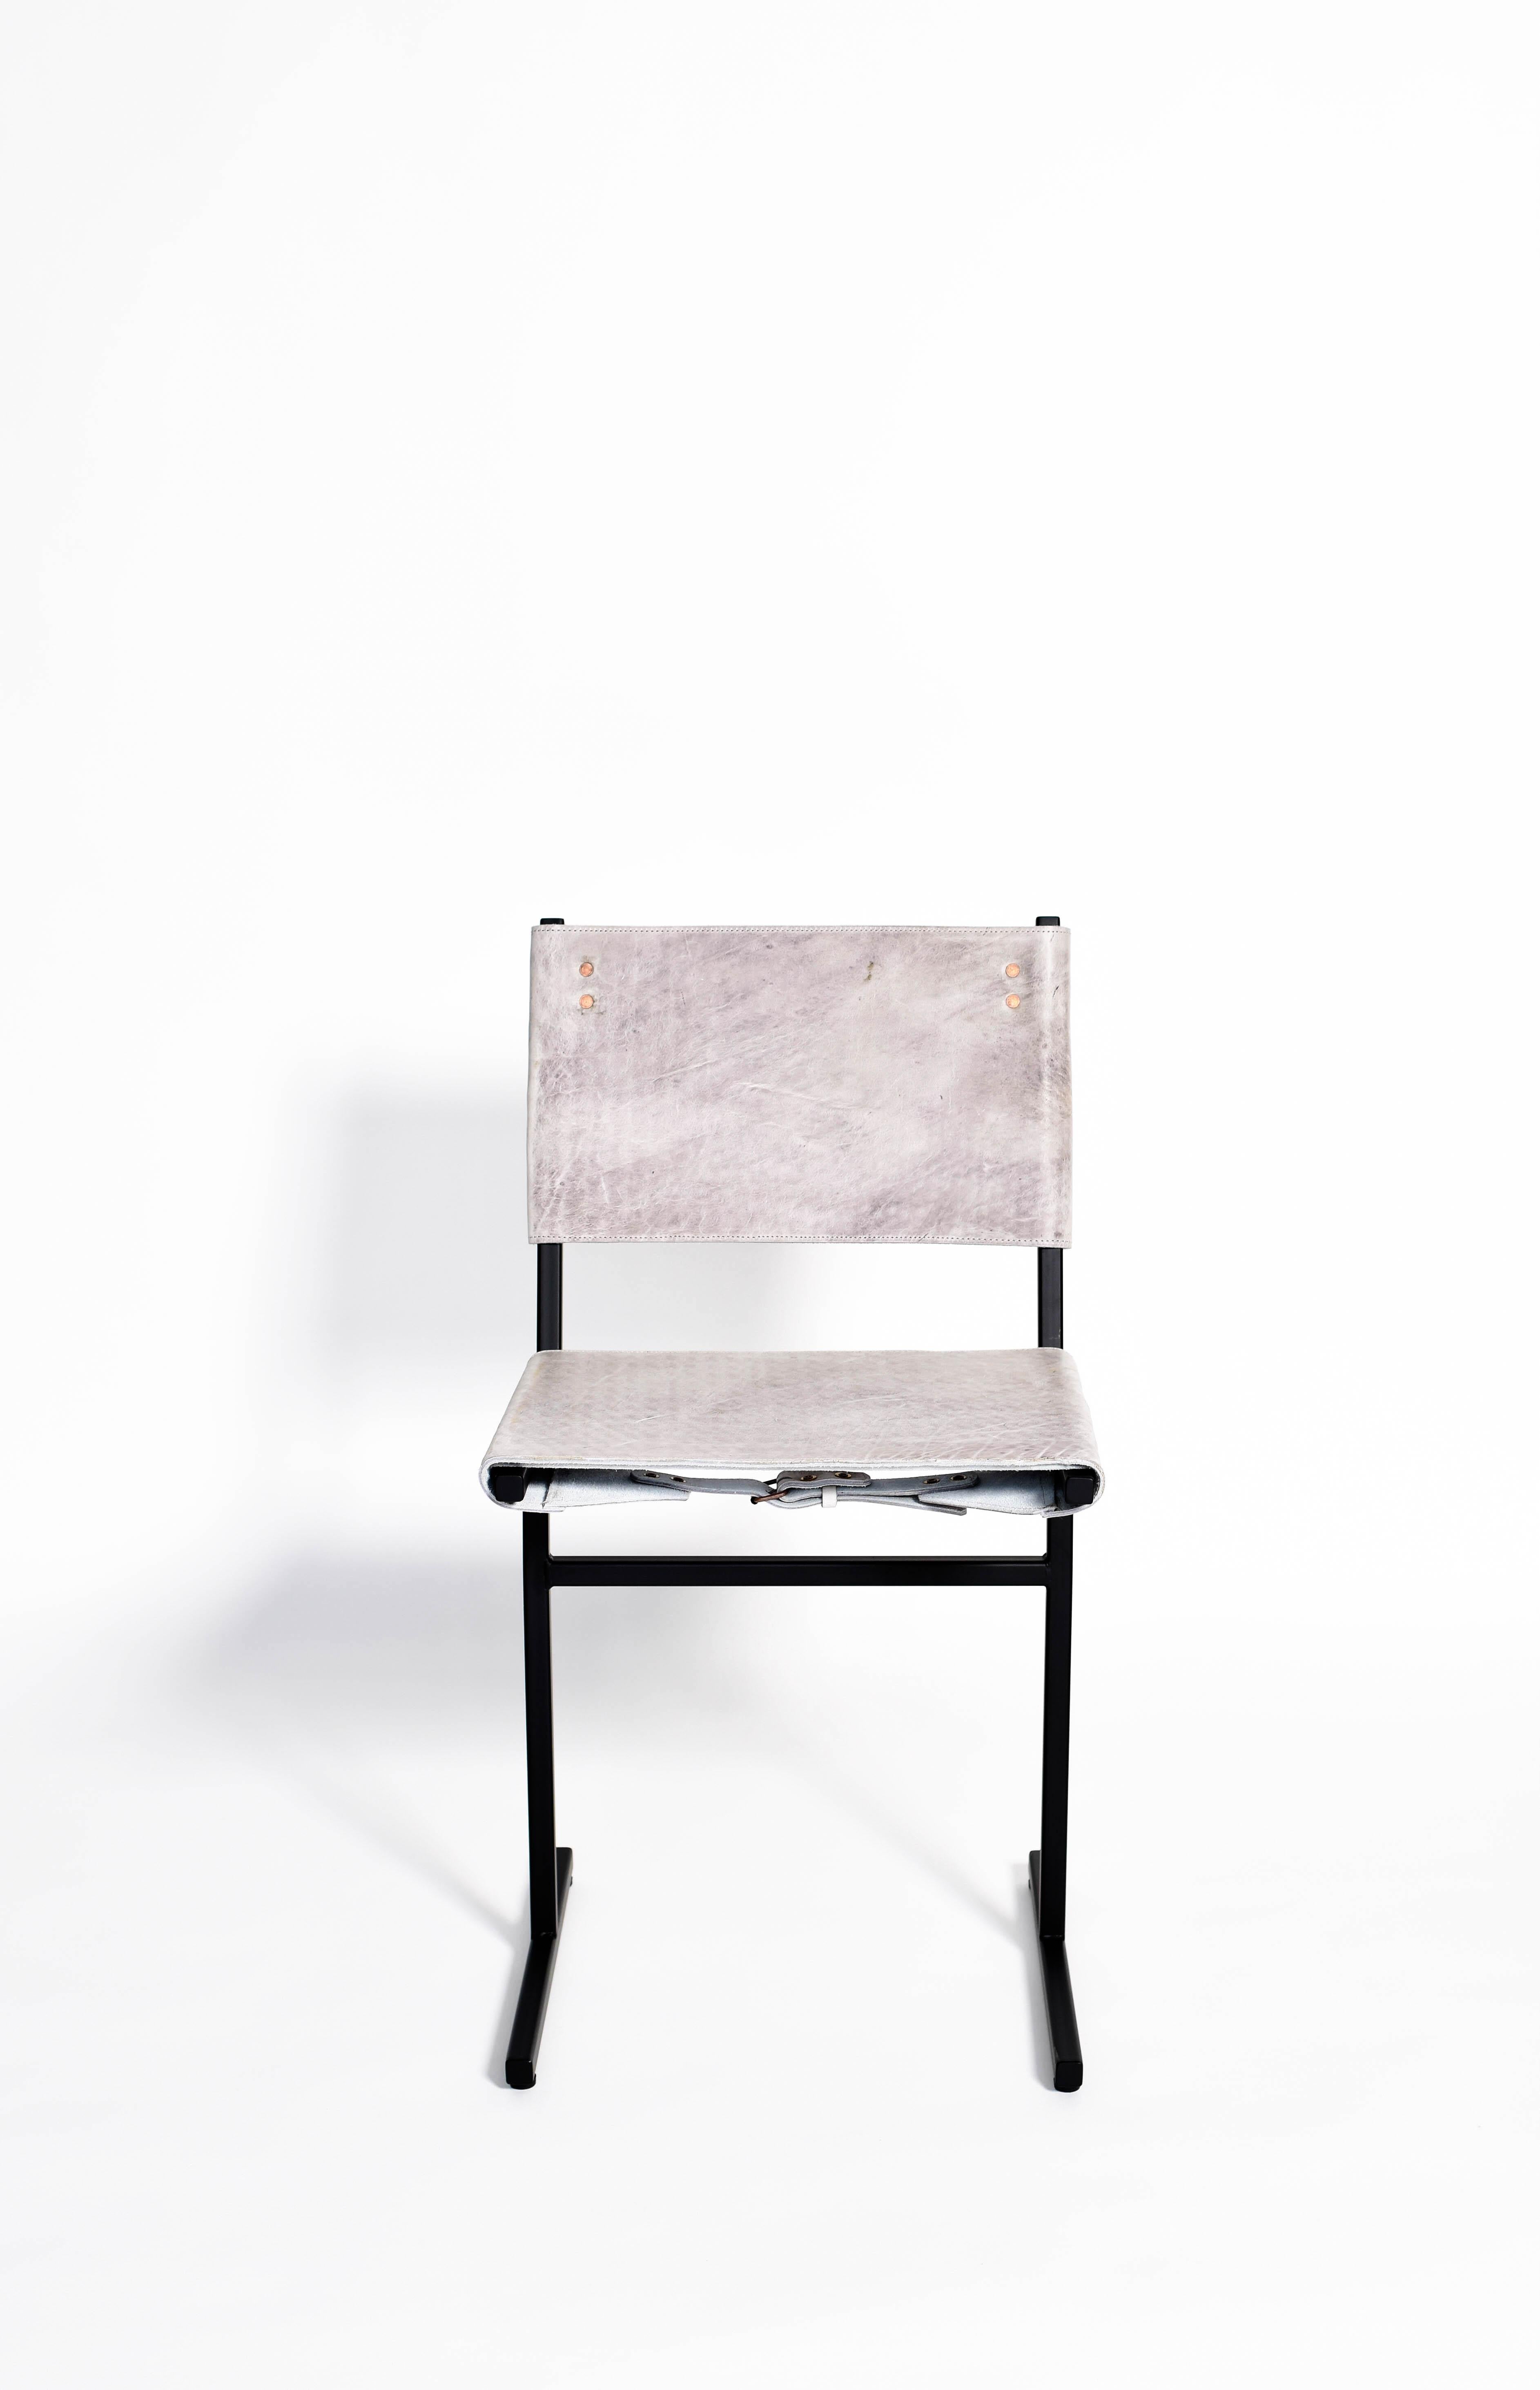 Steel Moss Green Memento Chair, Jesse Sanderson